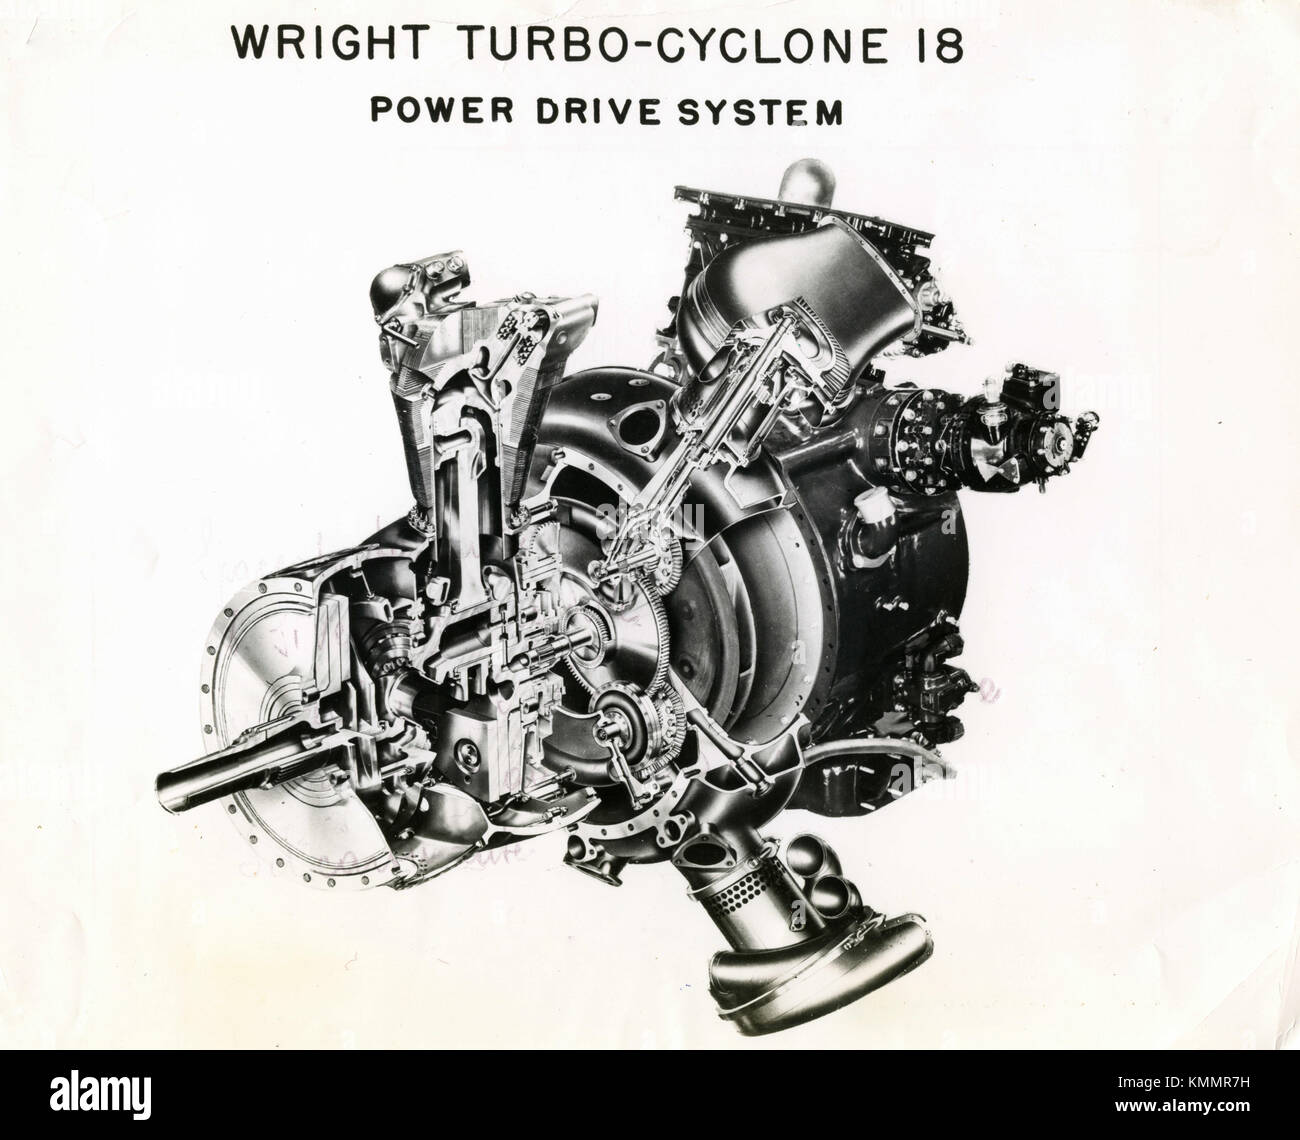 18 Turbo-Cyclone Flugmotor Wright aeronautical Corporation, USA 1940 Stockfoto